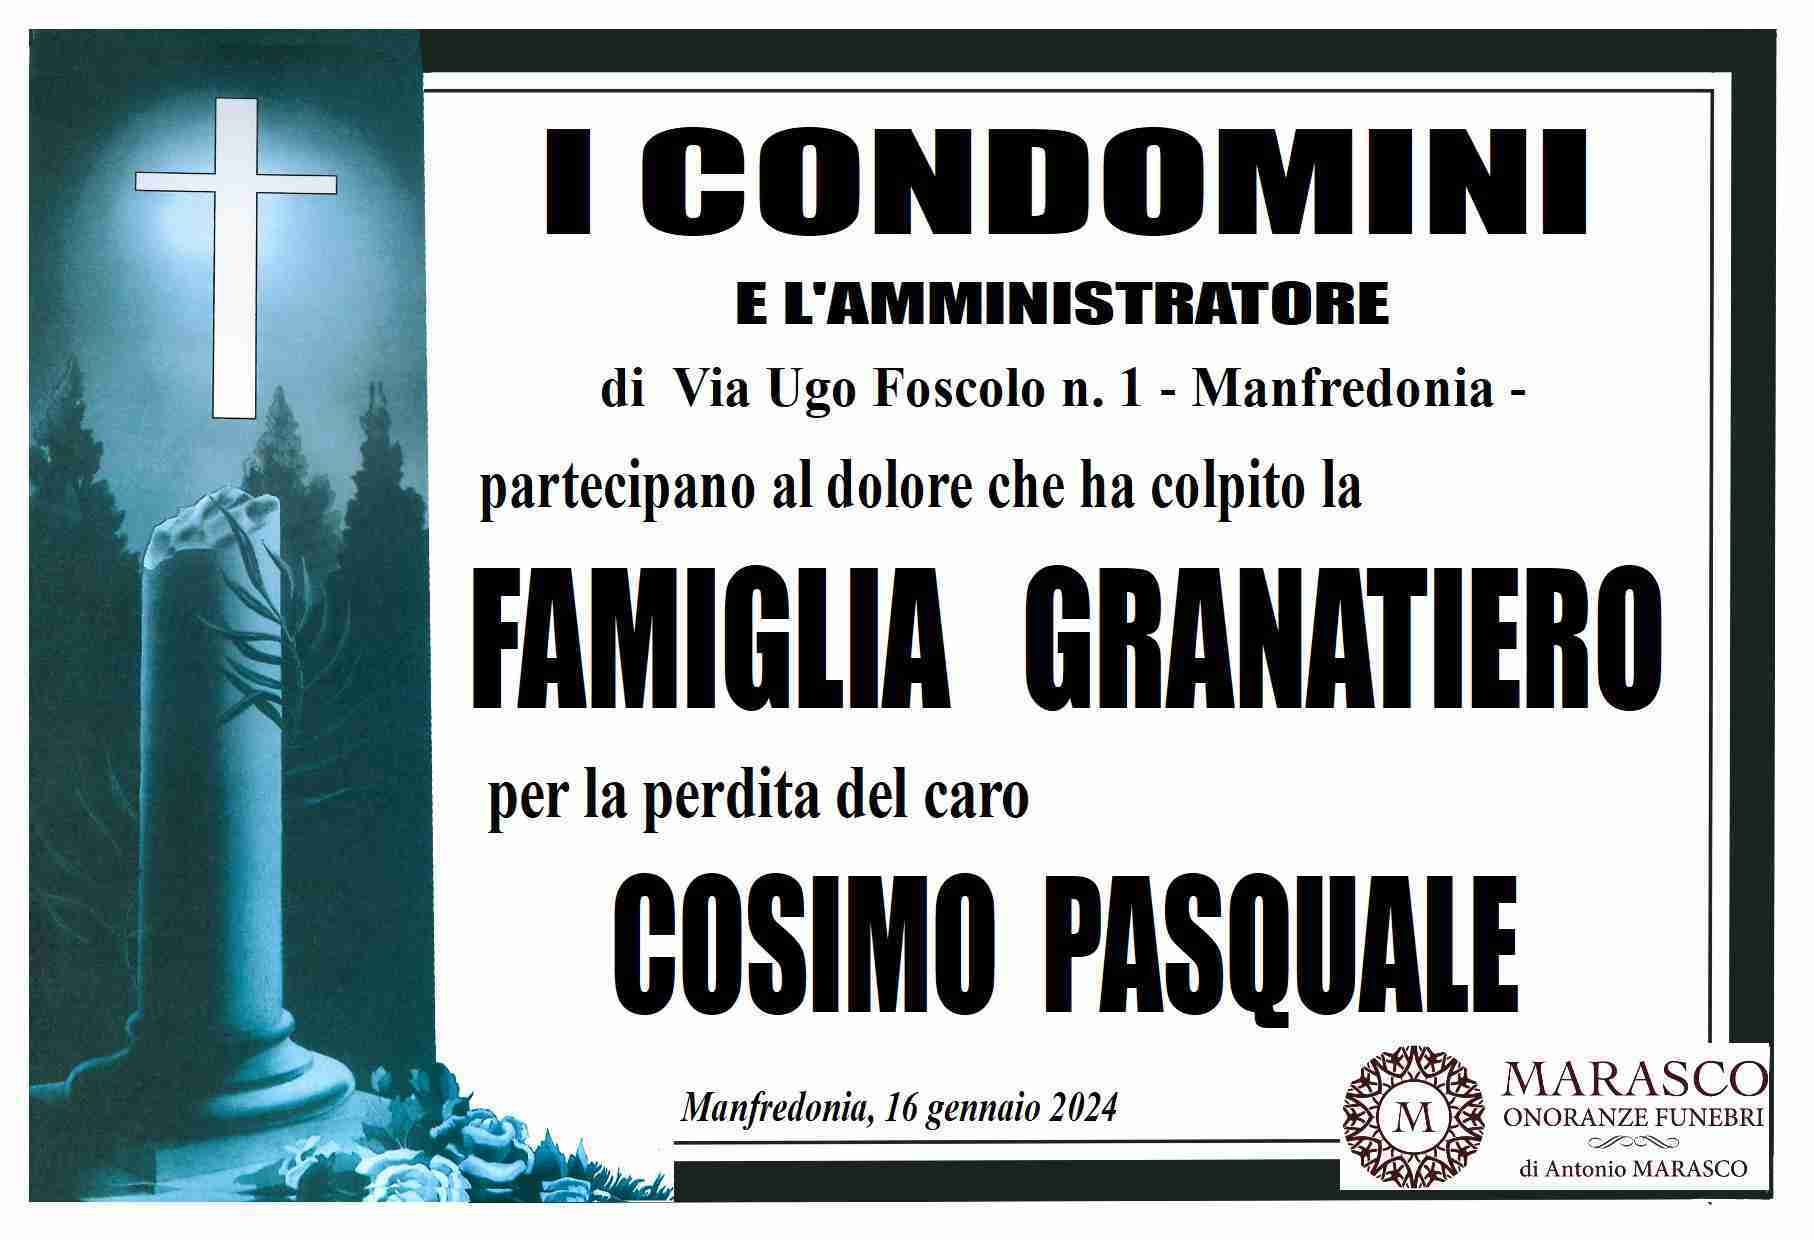 Cosimo Pasquale Granatiero